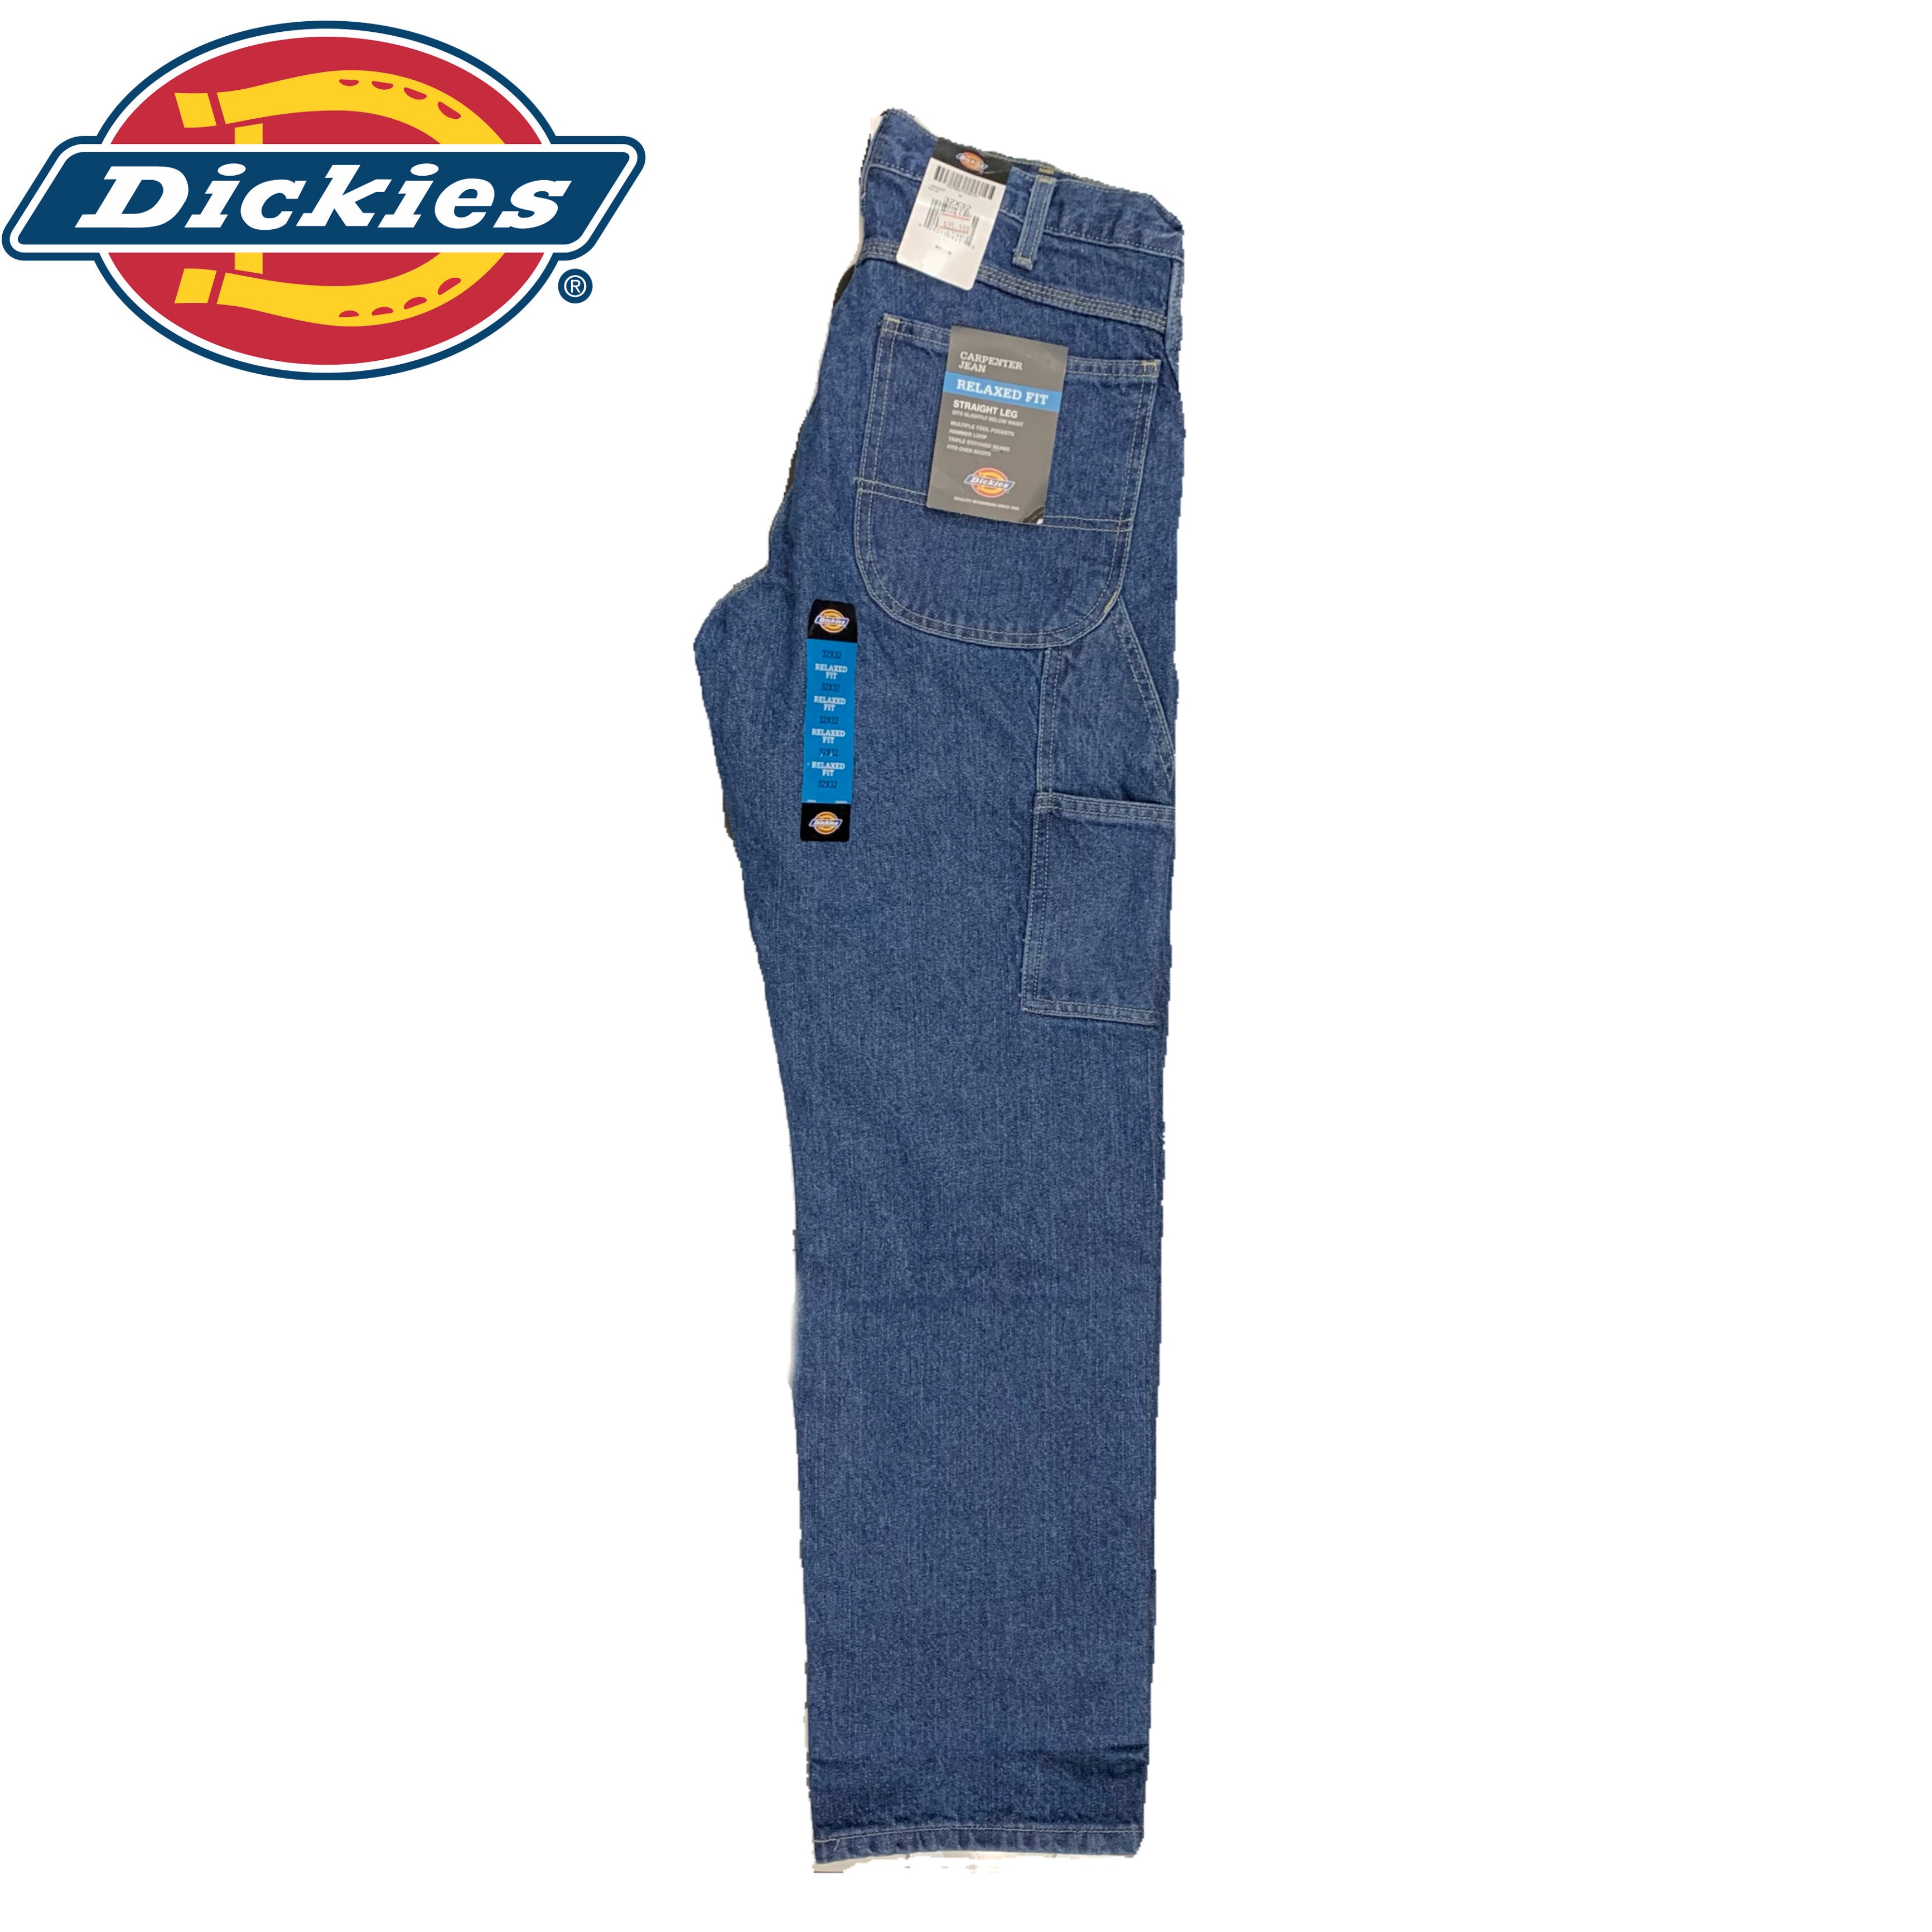 Dickies Carpenter Jeans - Stonewashed